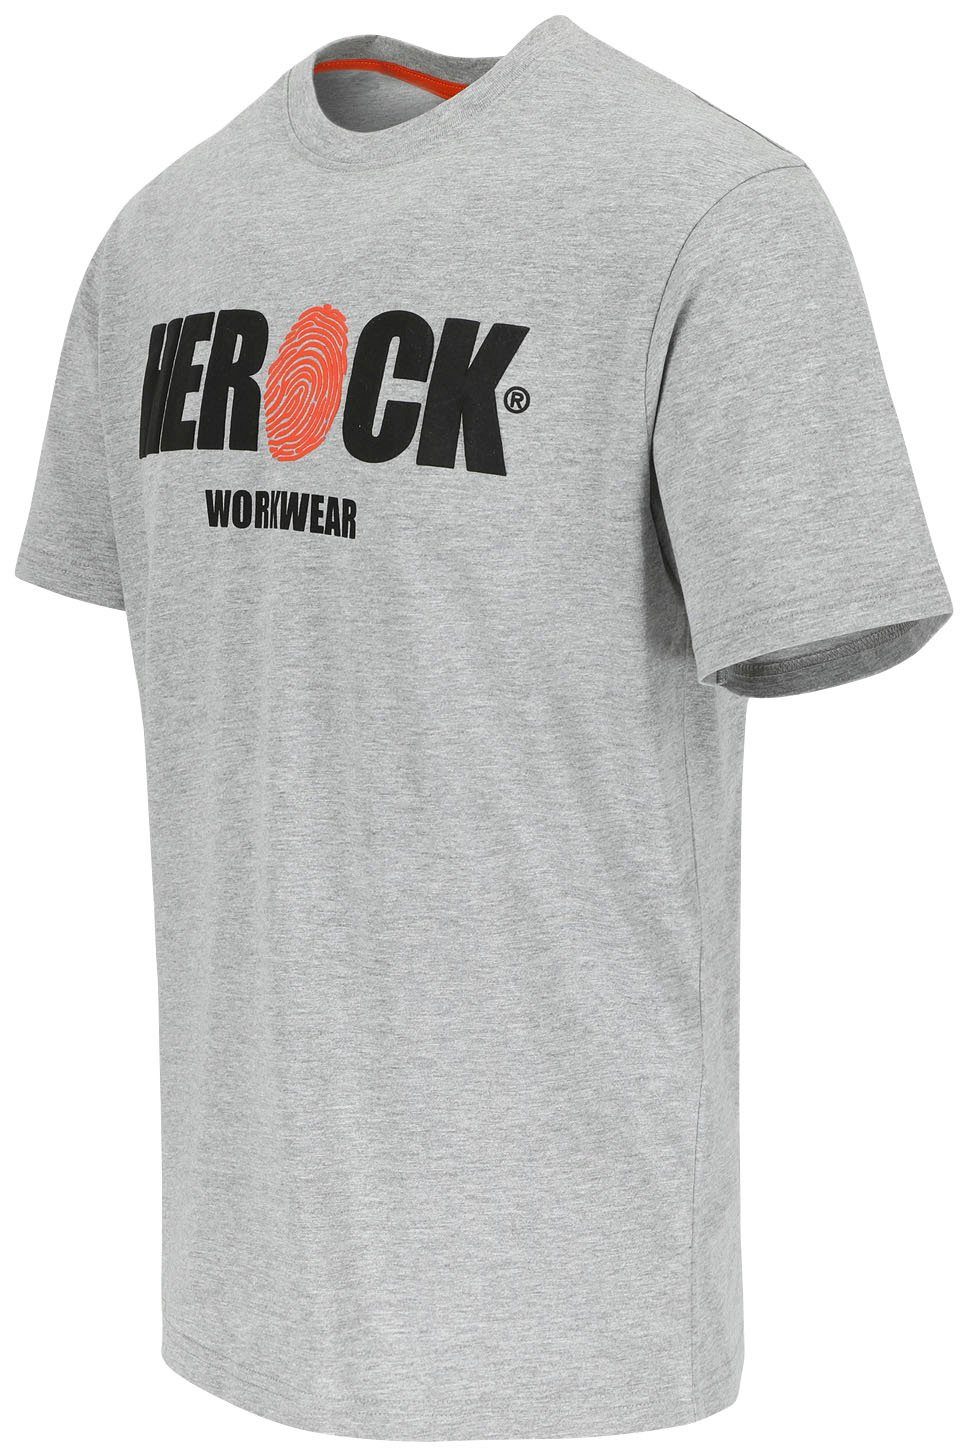 mit Herock®-Aufdruck, T-Shirt grau angenehmes Baumwolle, Rundhals, Herock ENI Tragegefühl